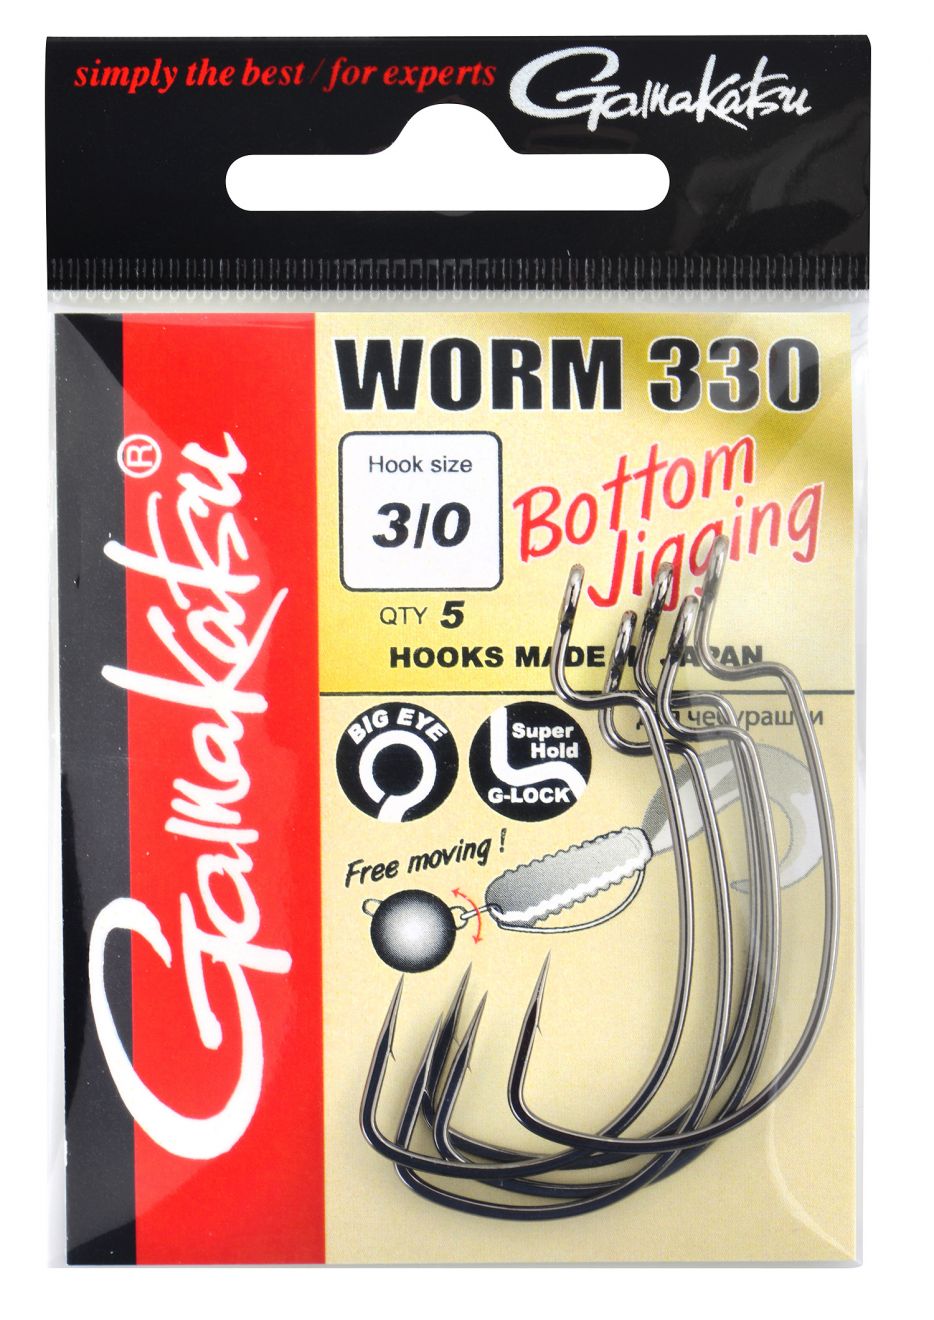 Gamakatsu Worm 330 Bottom Jigging Hooks Size 5/0